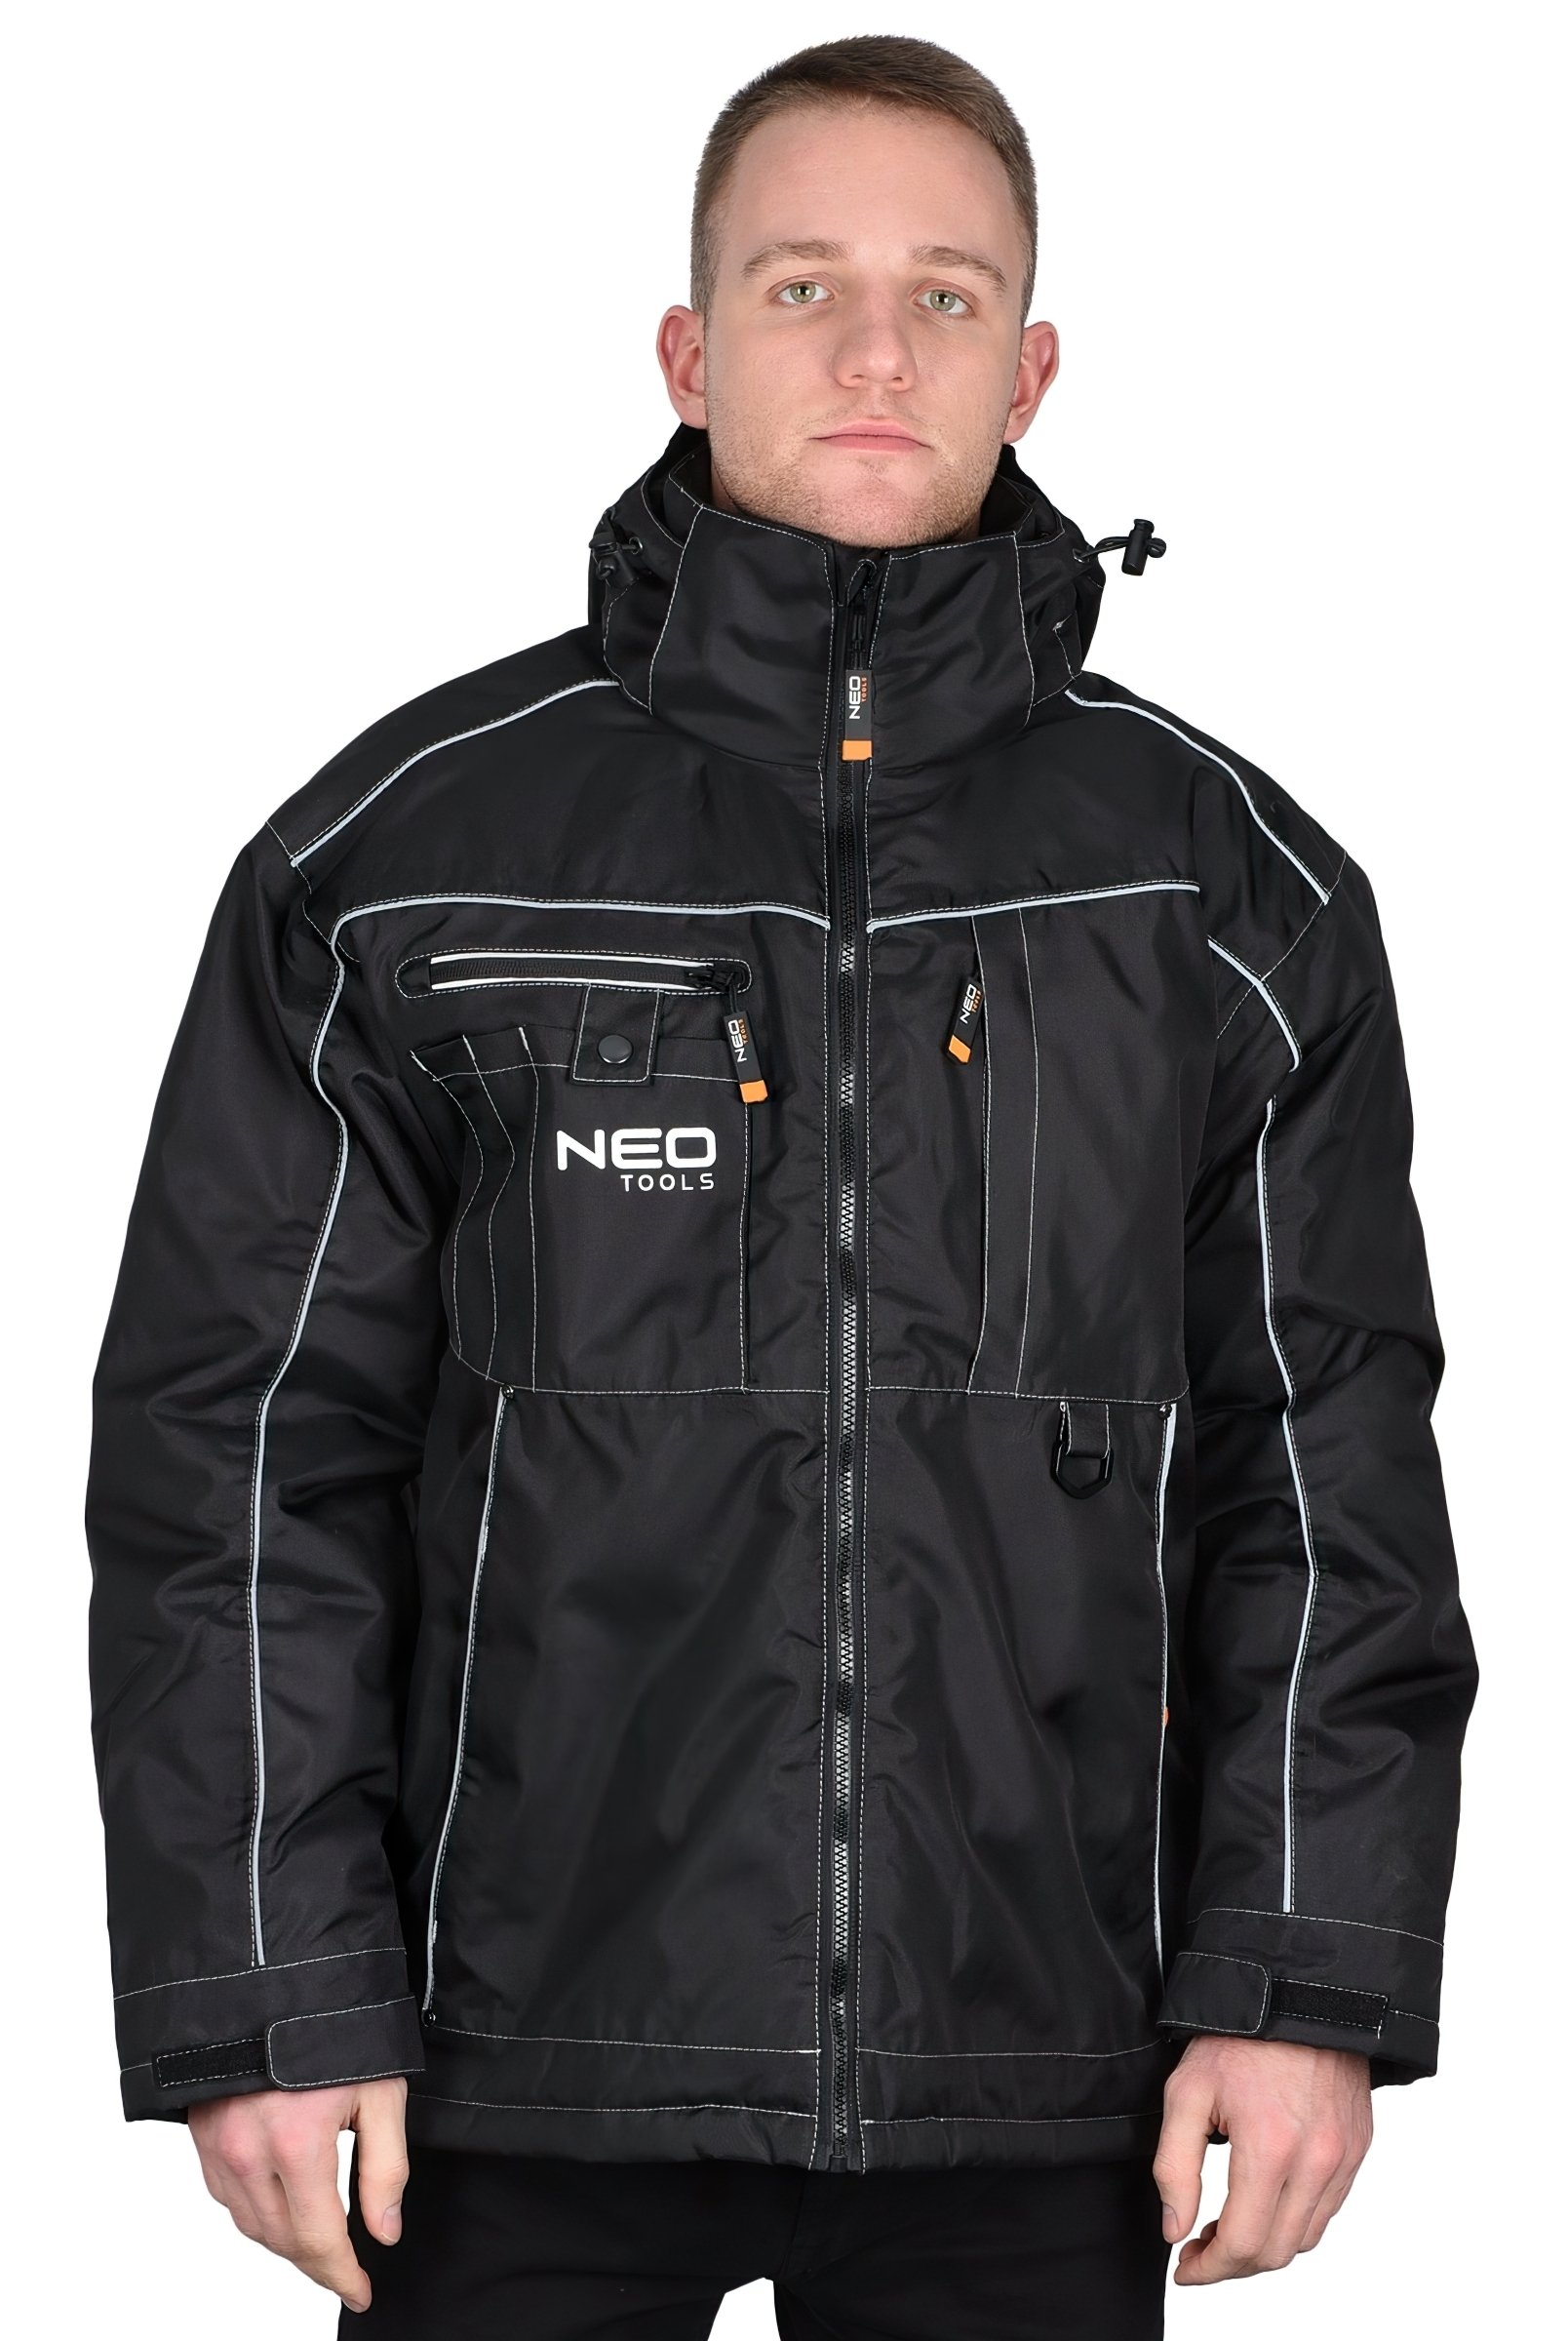 Куртка робоча Neo Tools Oxford, розмір M (81-570-M)фото17